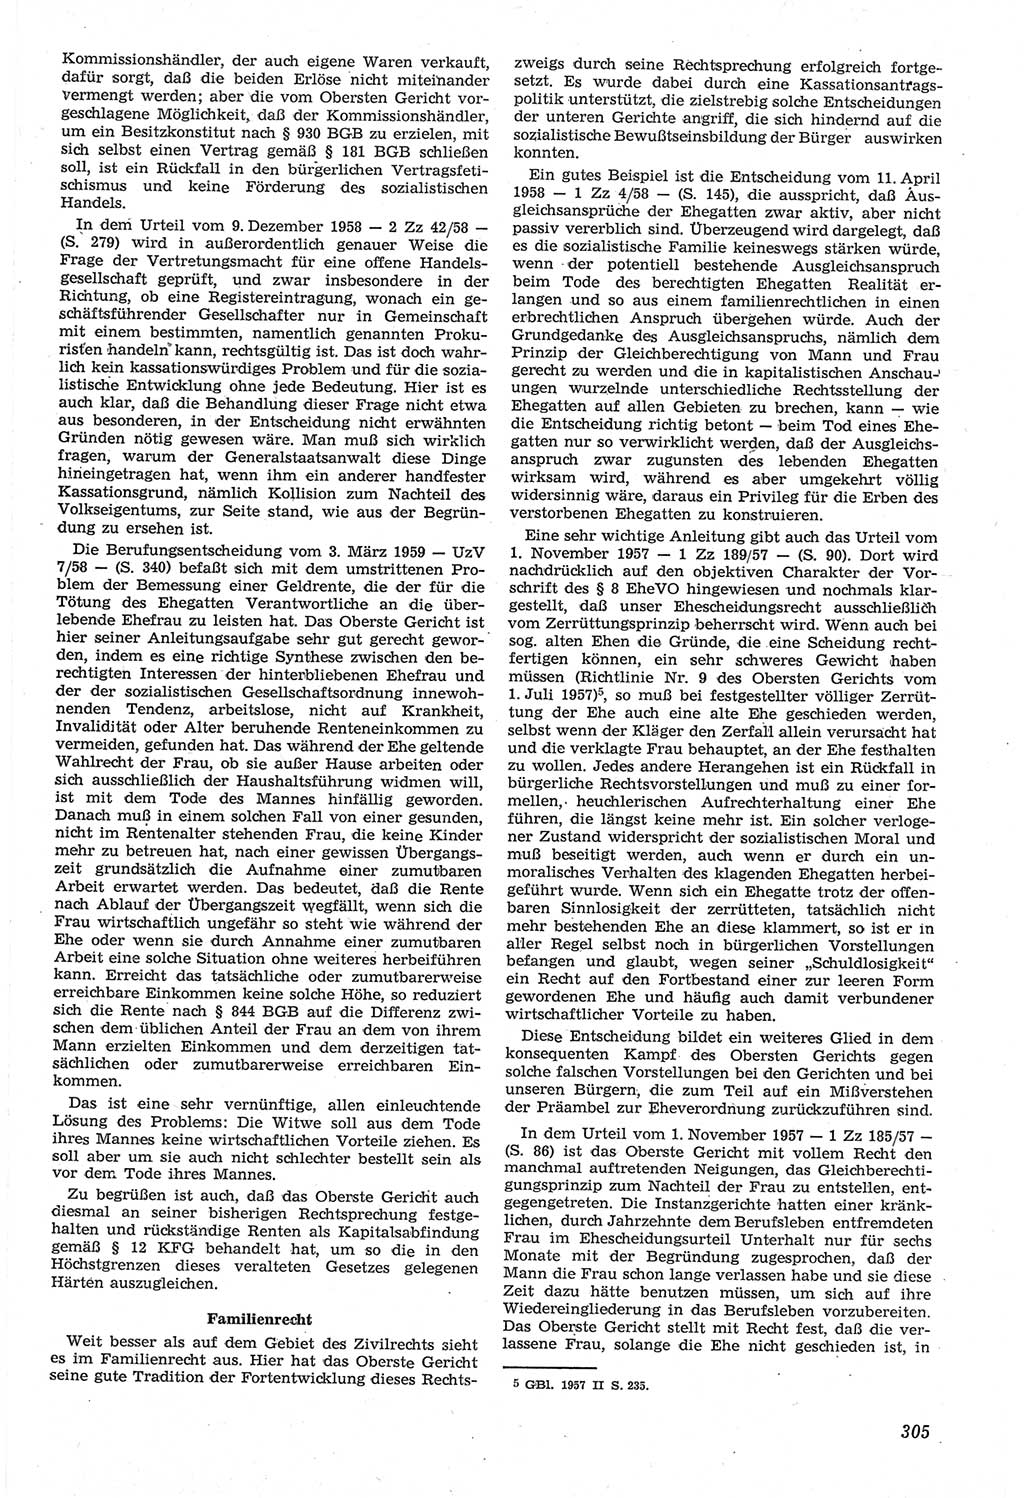 Neue Justiz (NJ), Zeitschrift für Recht und Rechtswissenschaft [Deutsche Demokratische Republik (DDR)], 14. Jahrgang 1960, Seite 305 (NJ DDR 1960, S. 305)